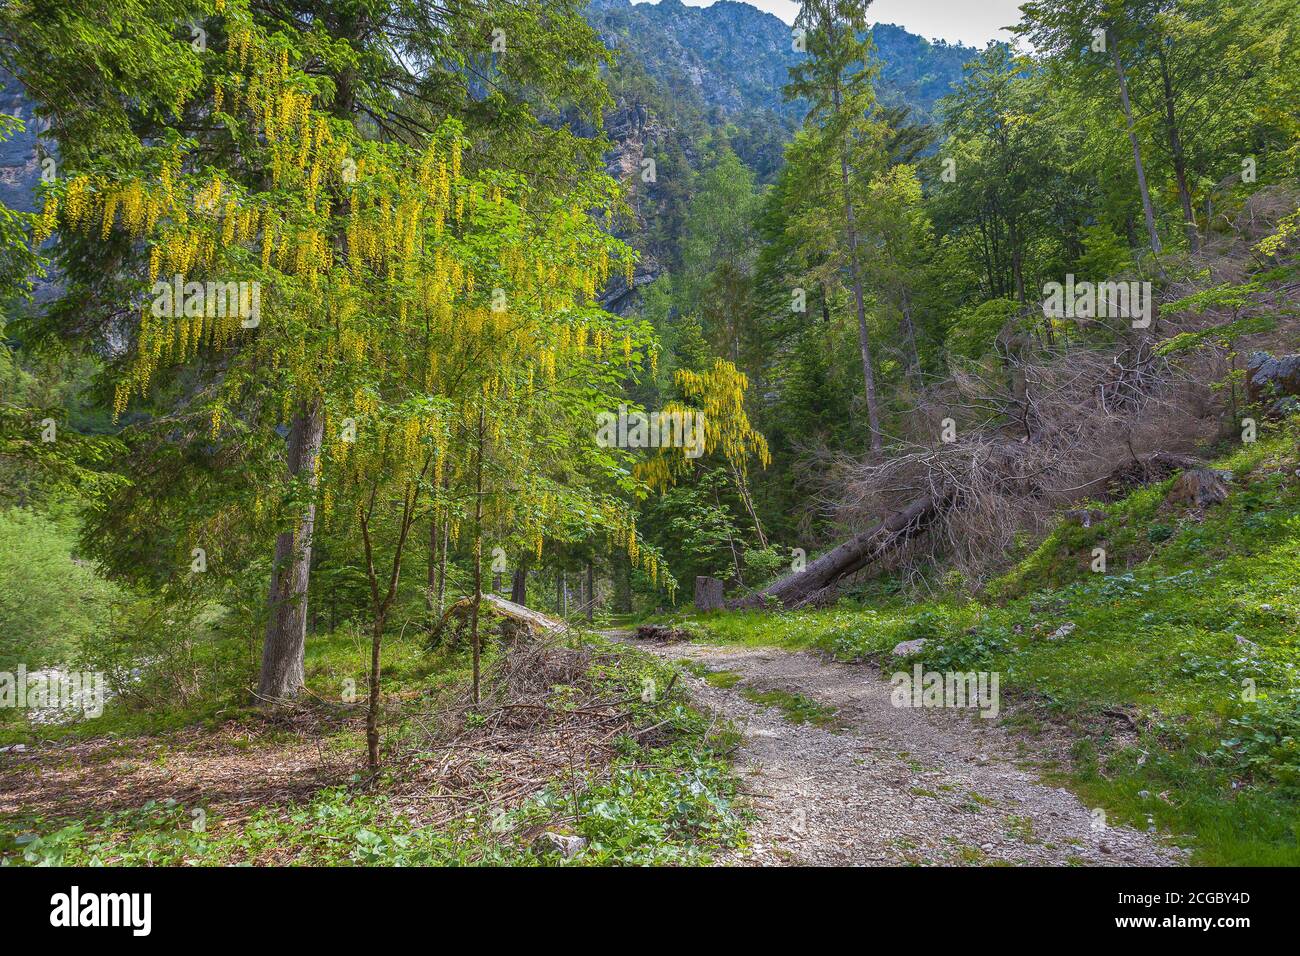 Route forestière à travers un bois avec des laburnums et des sapins en fleurs, vallée de Cellina, Italie Banque D'Images